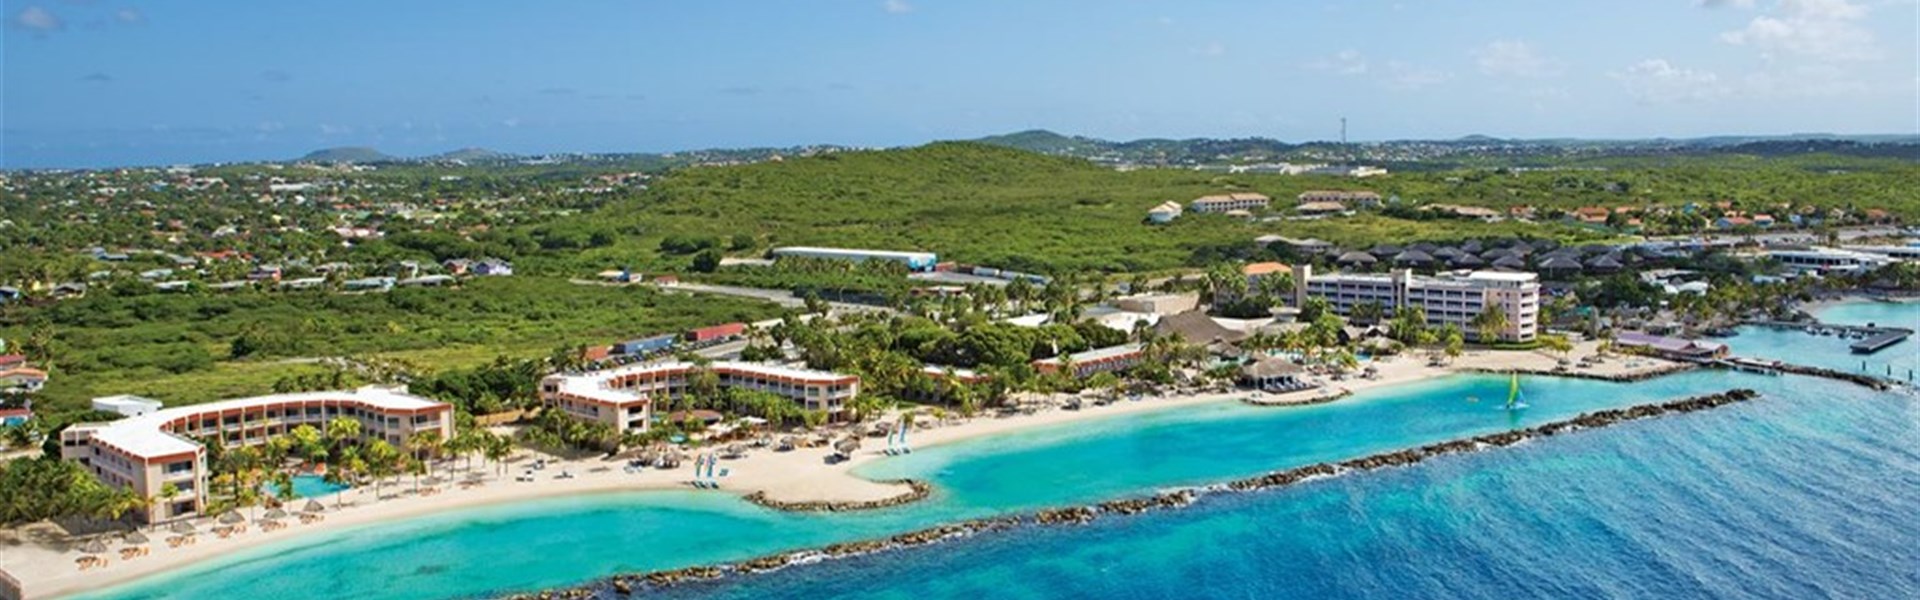 Marco Polo - Sunscape Curaçao Resort, Spa & Casino - All Inclusive - 